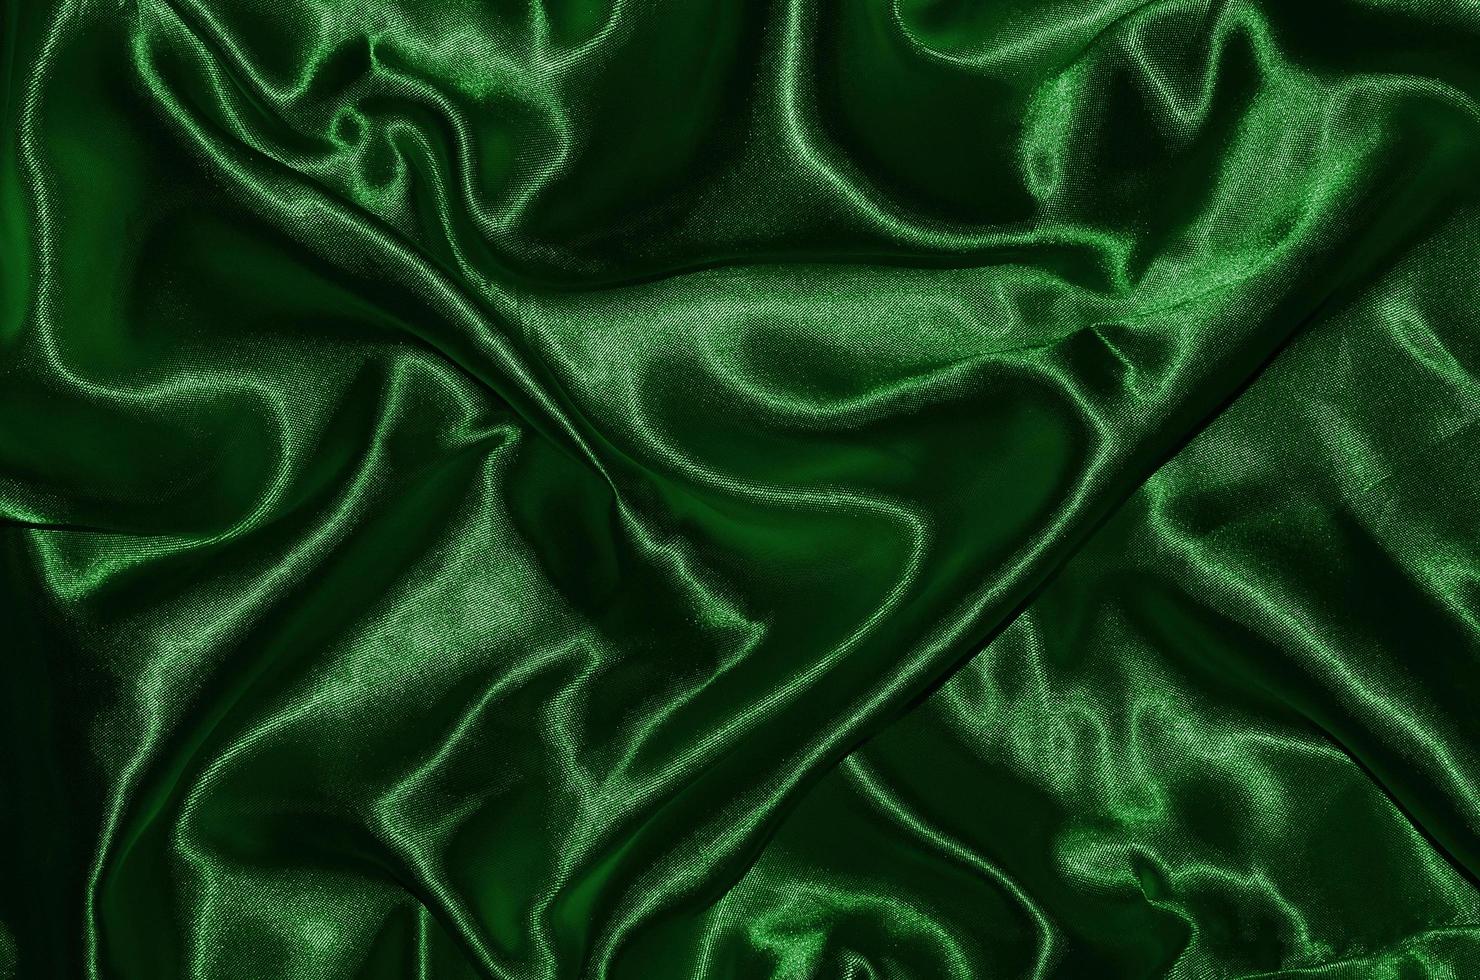 Fondo y papel tapiz de tela verde oscuro y textil a rayas. foto